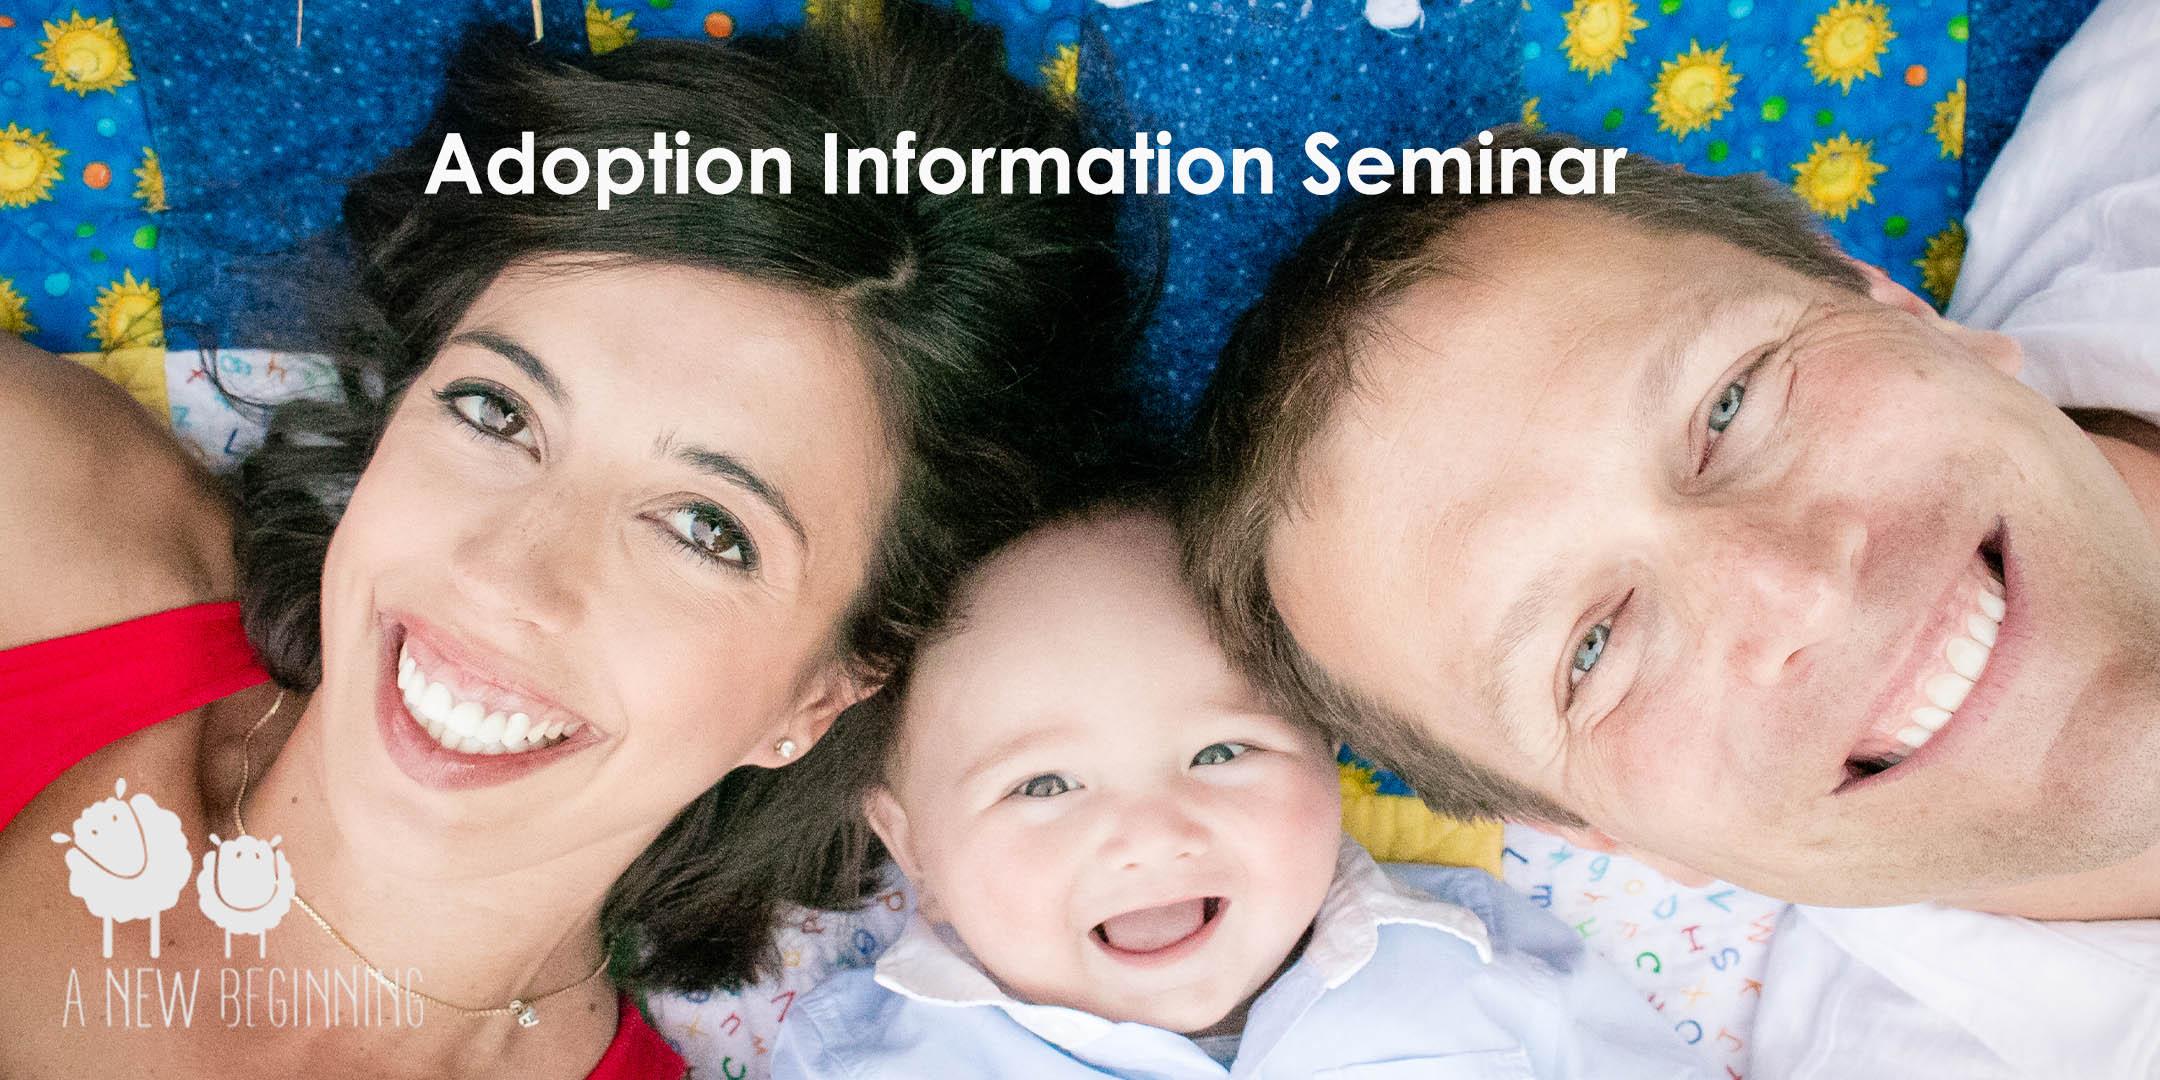 Adoption Information Seminar August